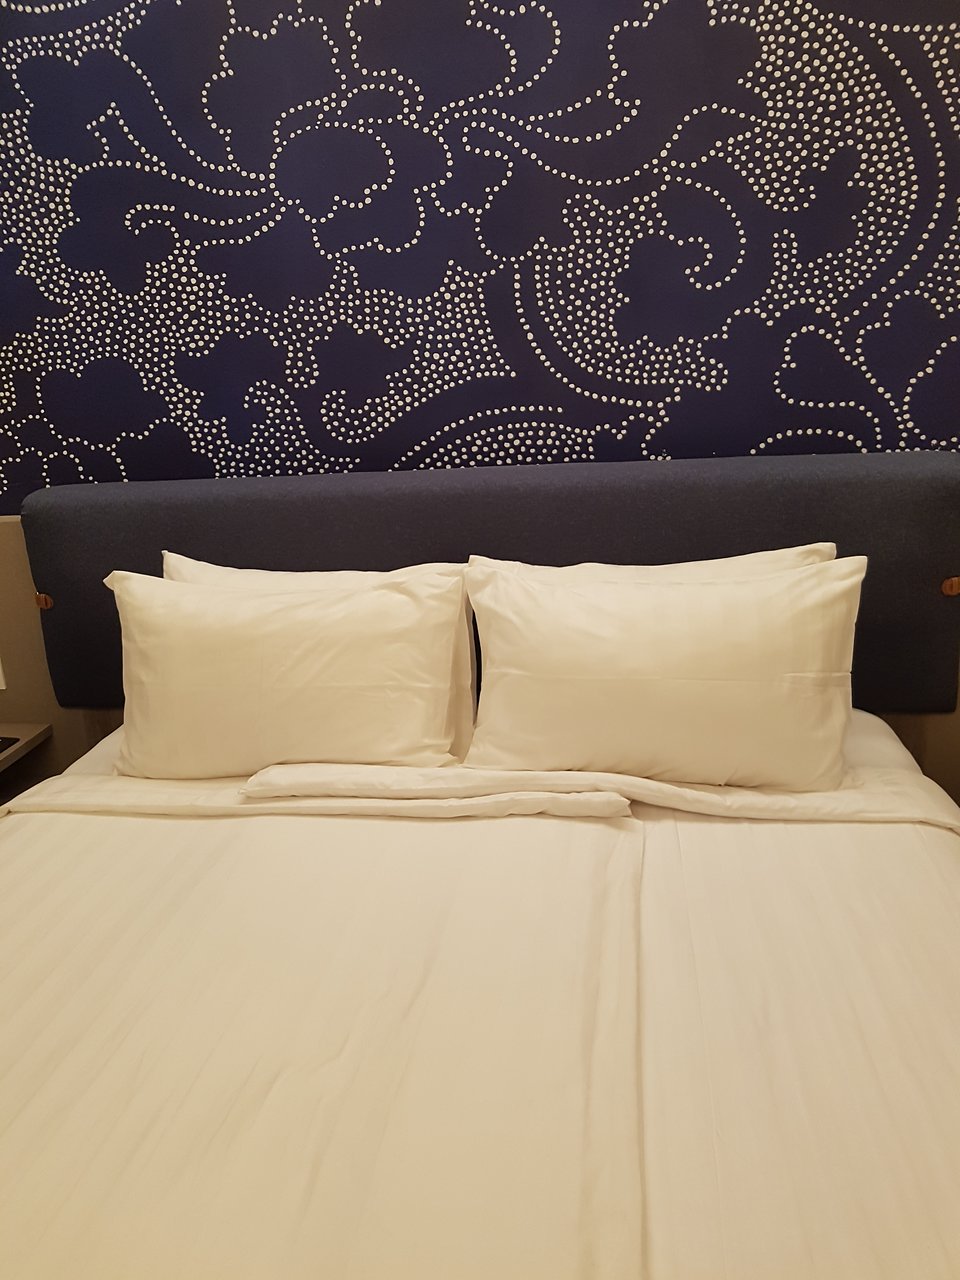 Luminor Hotel Sidoarjo $42 - Bedroom , HD Wallpaper & Backgrounds